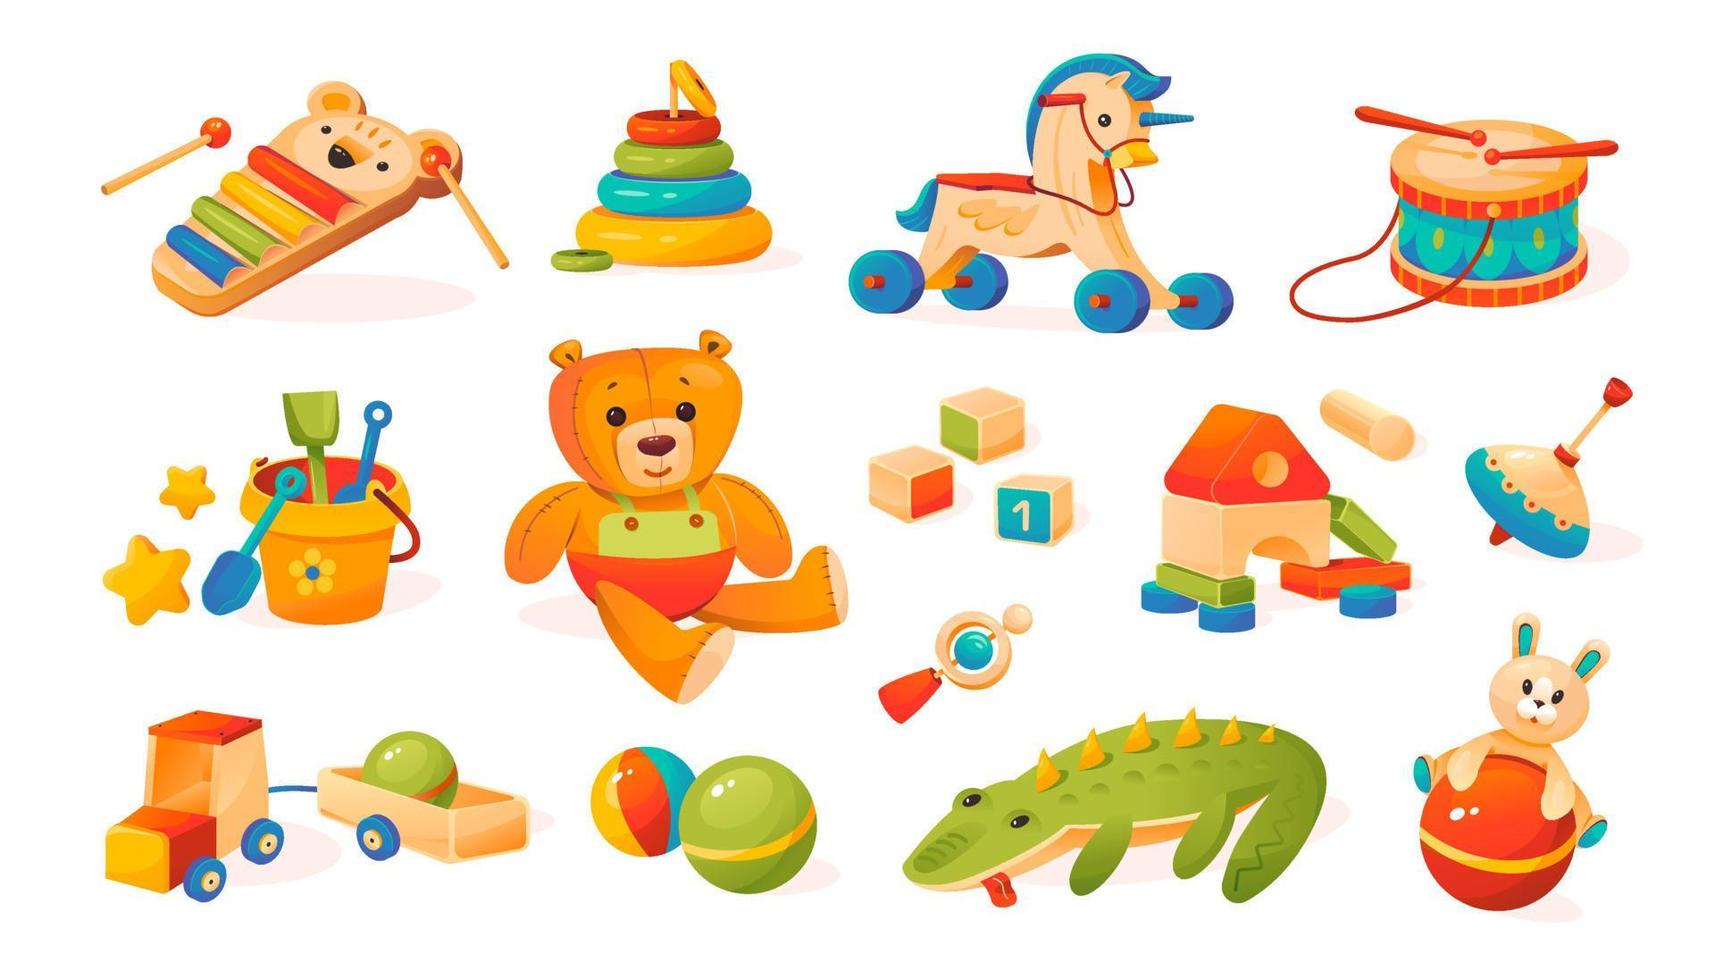 Sammlung von Kinderspielzeug. Teddybär, Ball, Würfel, Holzspielzeug. Cartoon-Stil vektor